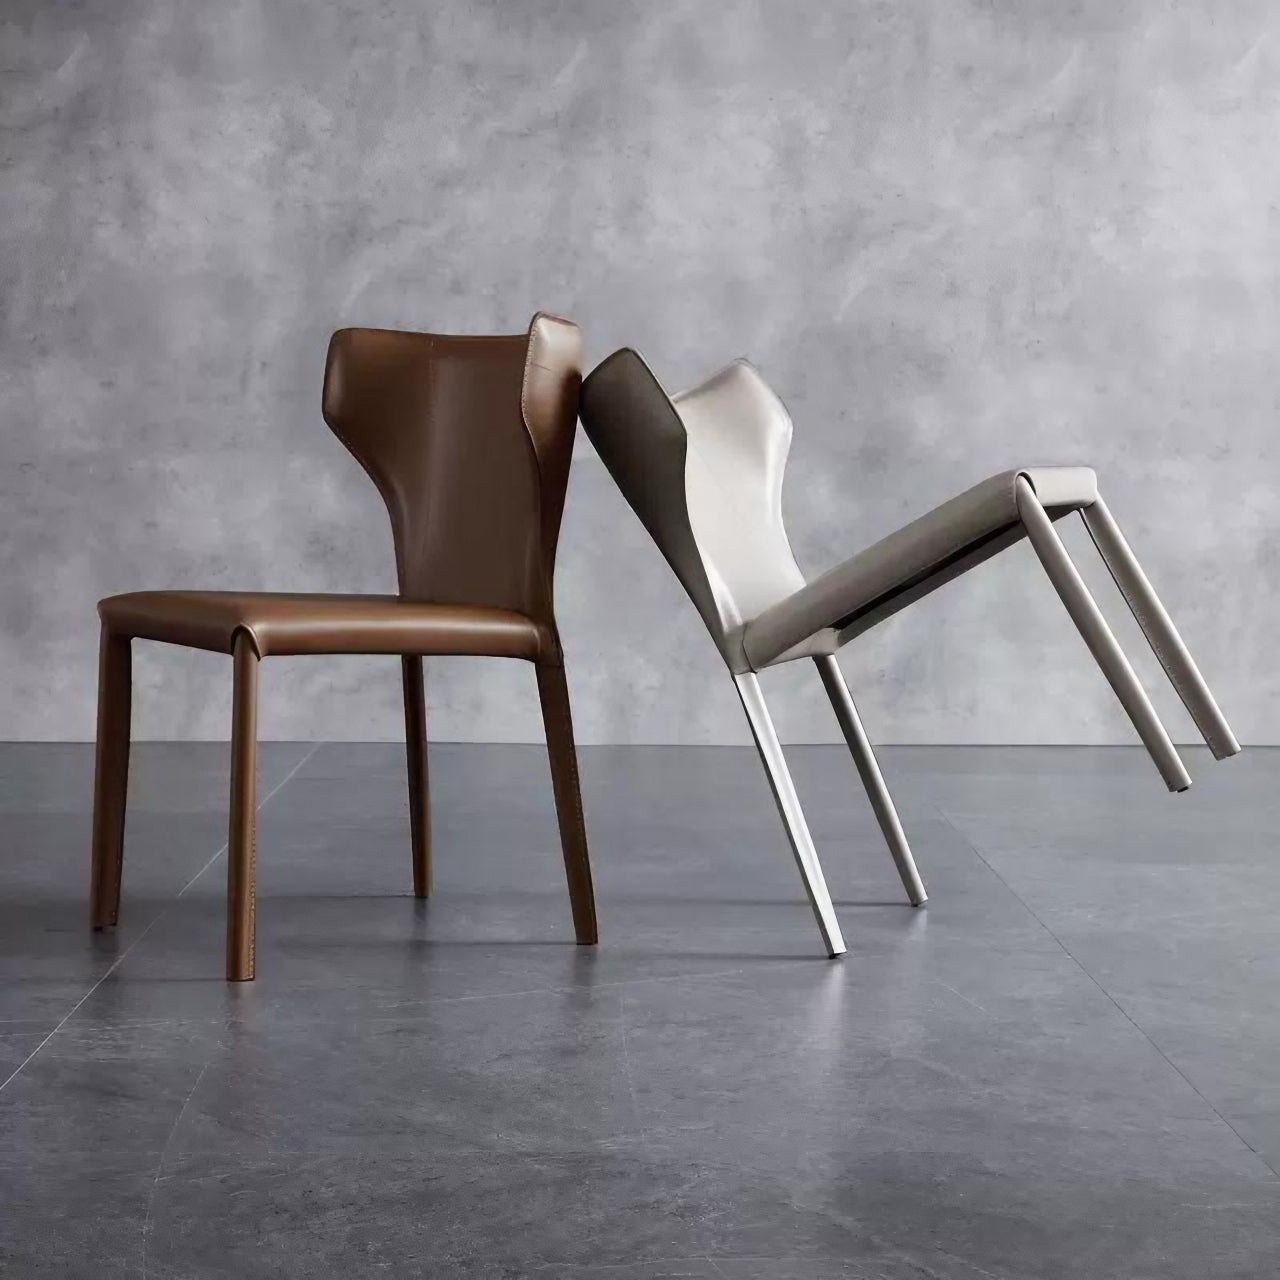 Elegant Light Khaki Saddle Leather Dining Chair with C-Shaped Backrest